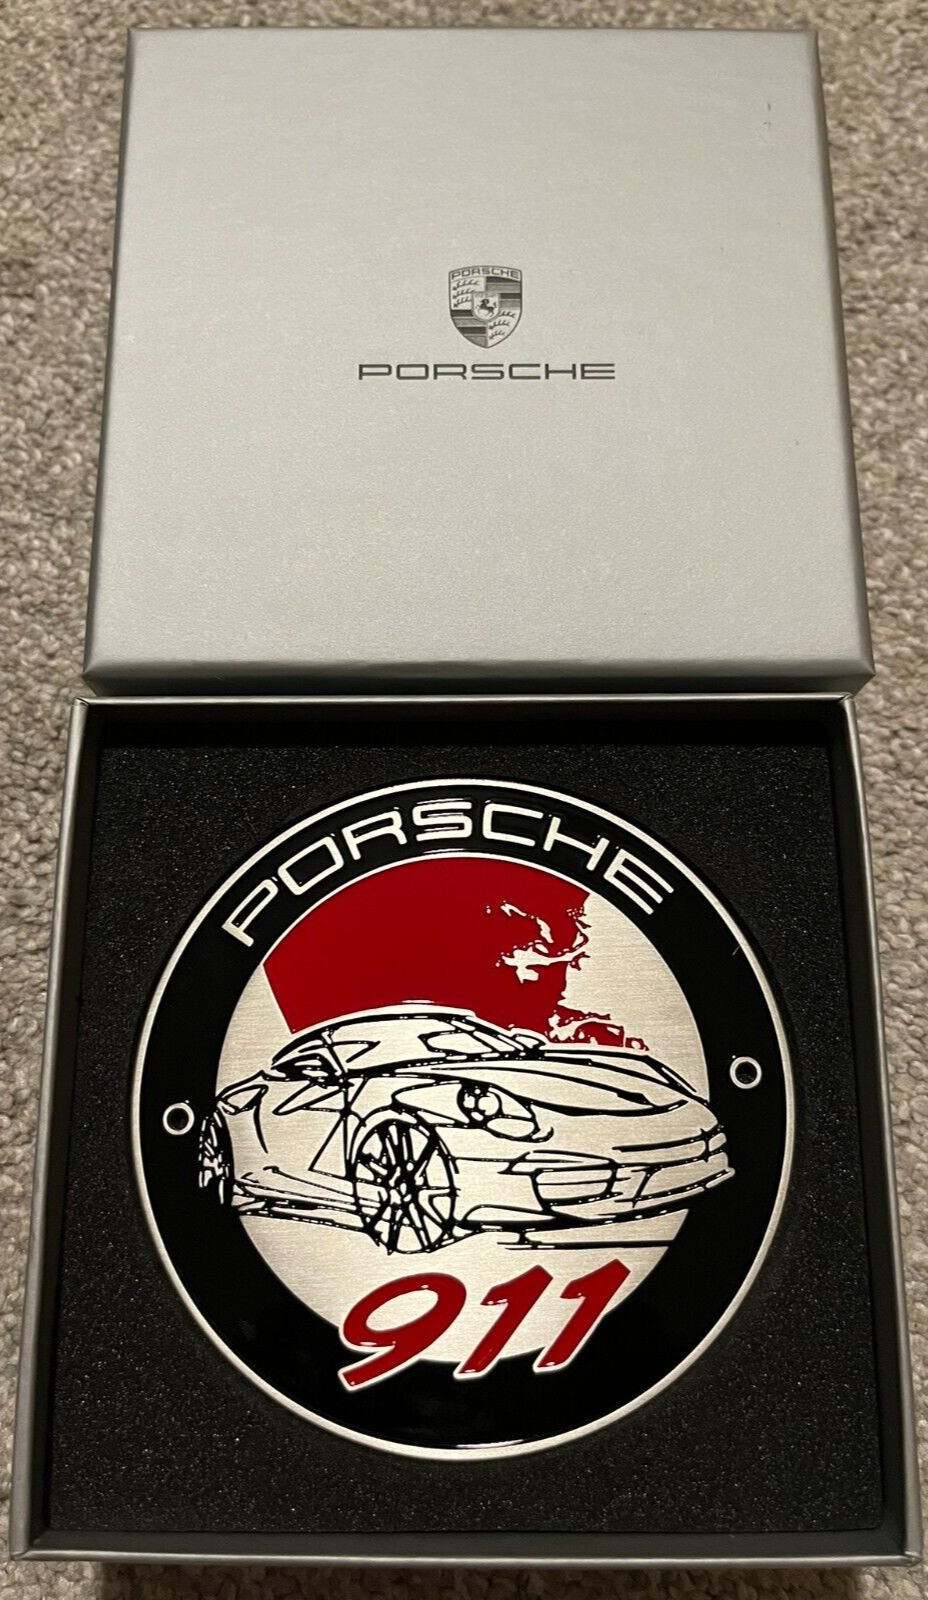 PORSCHE Grille Badge Emblem 911 Classic - Limited Edition WAP0500110G